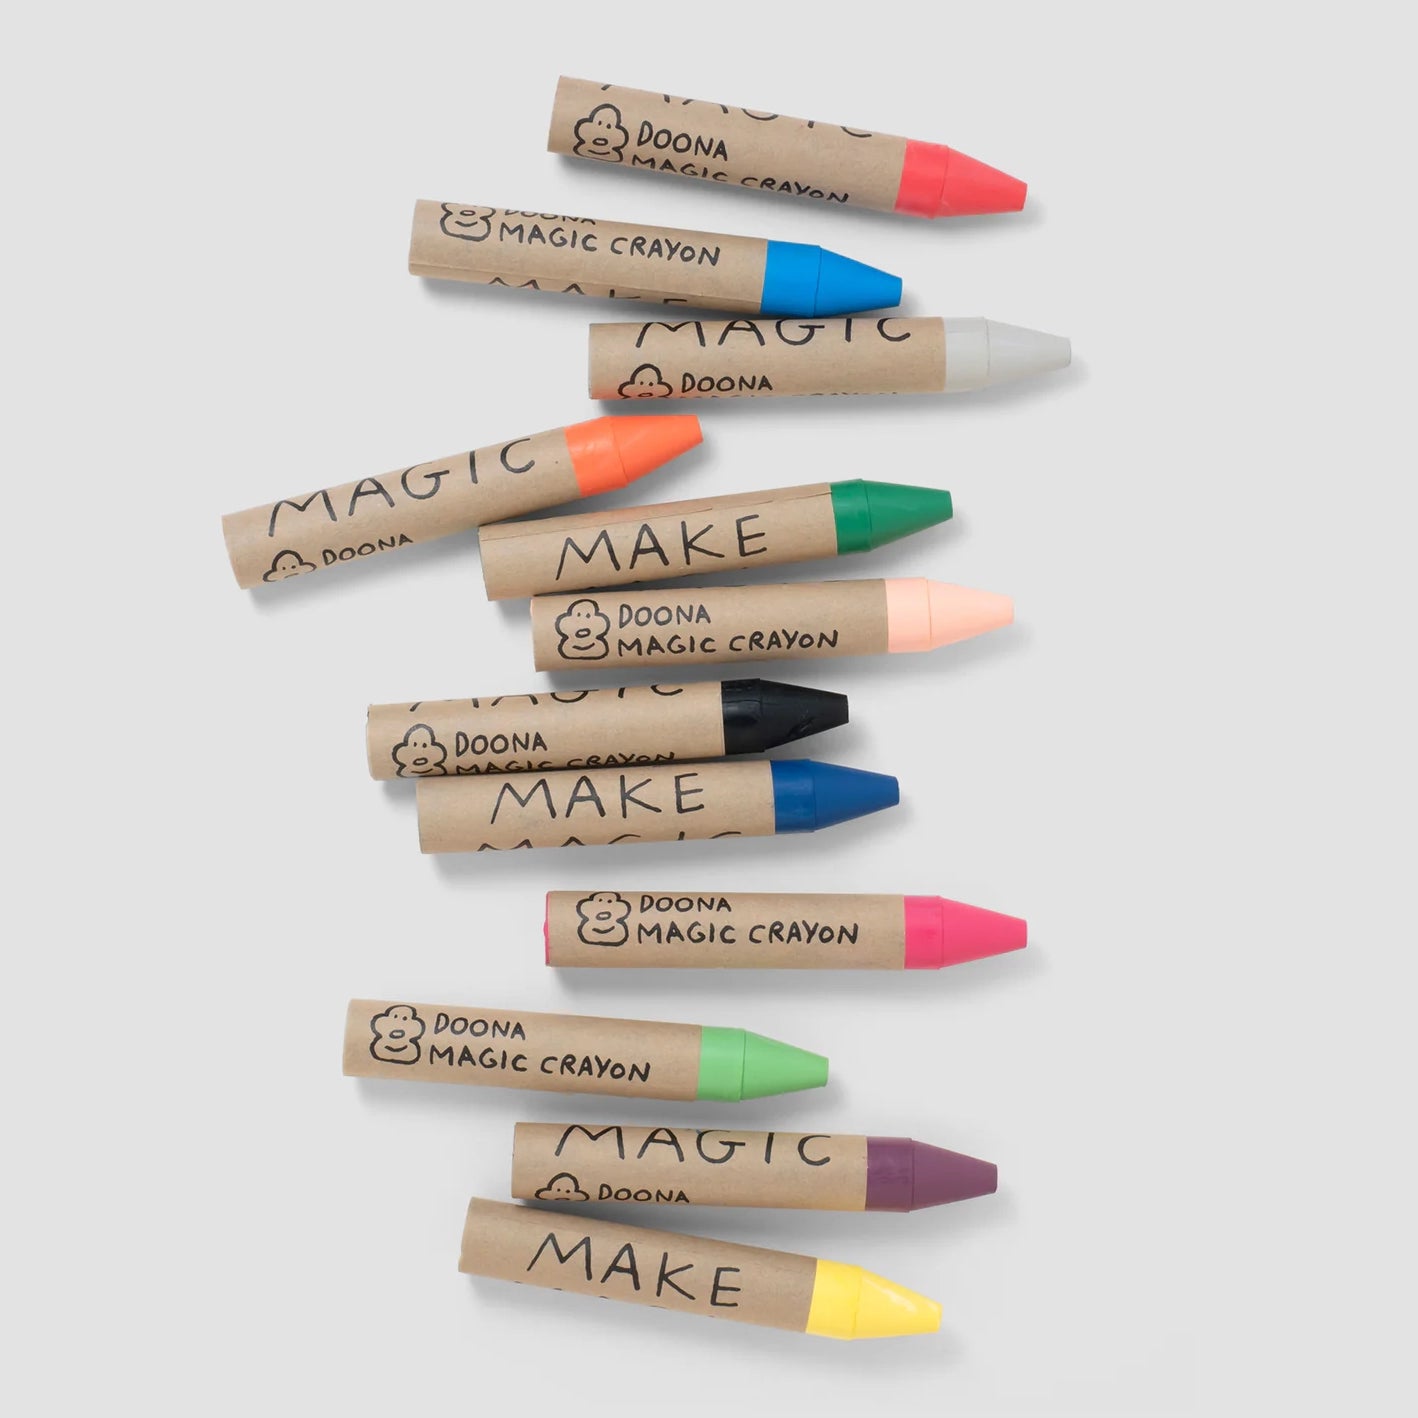 Woset Doona's Magic Crayons